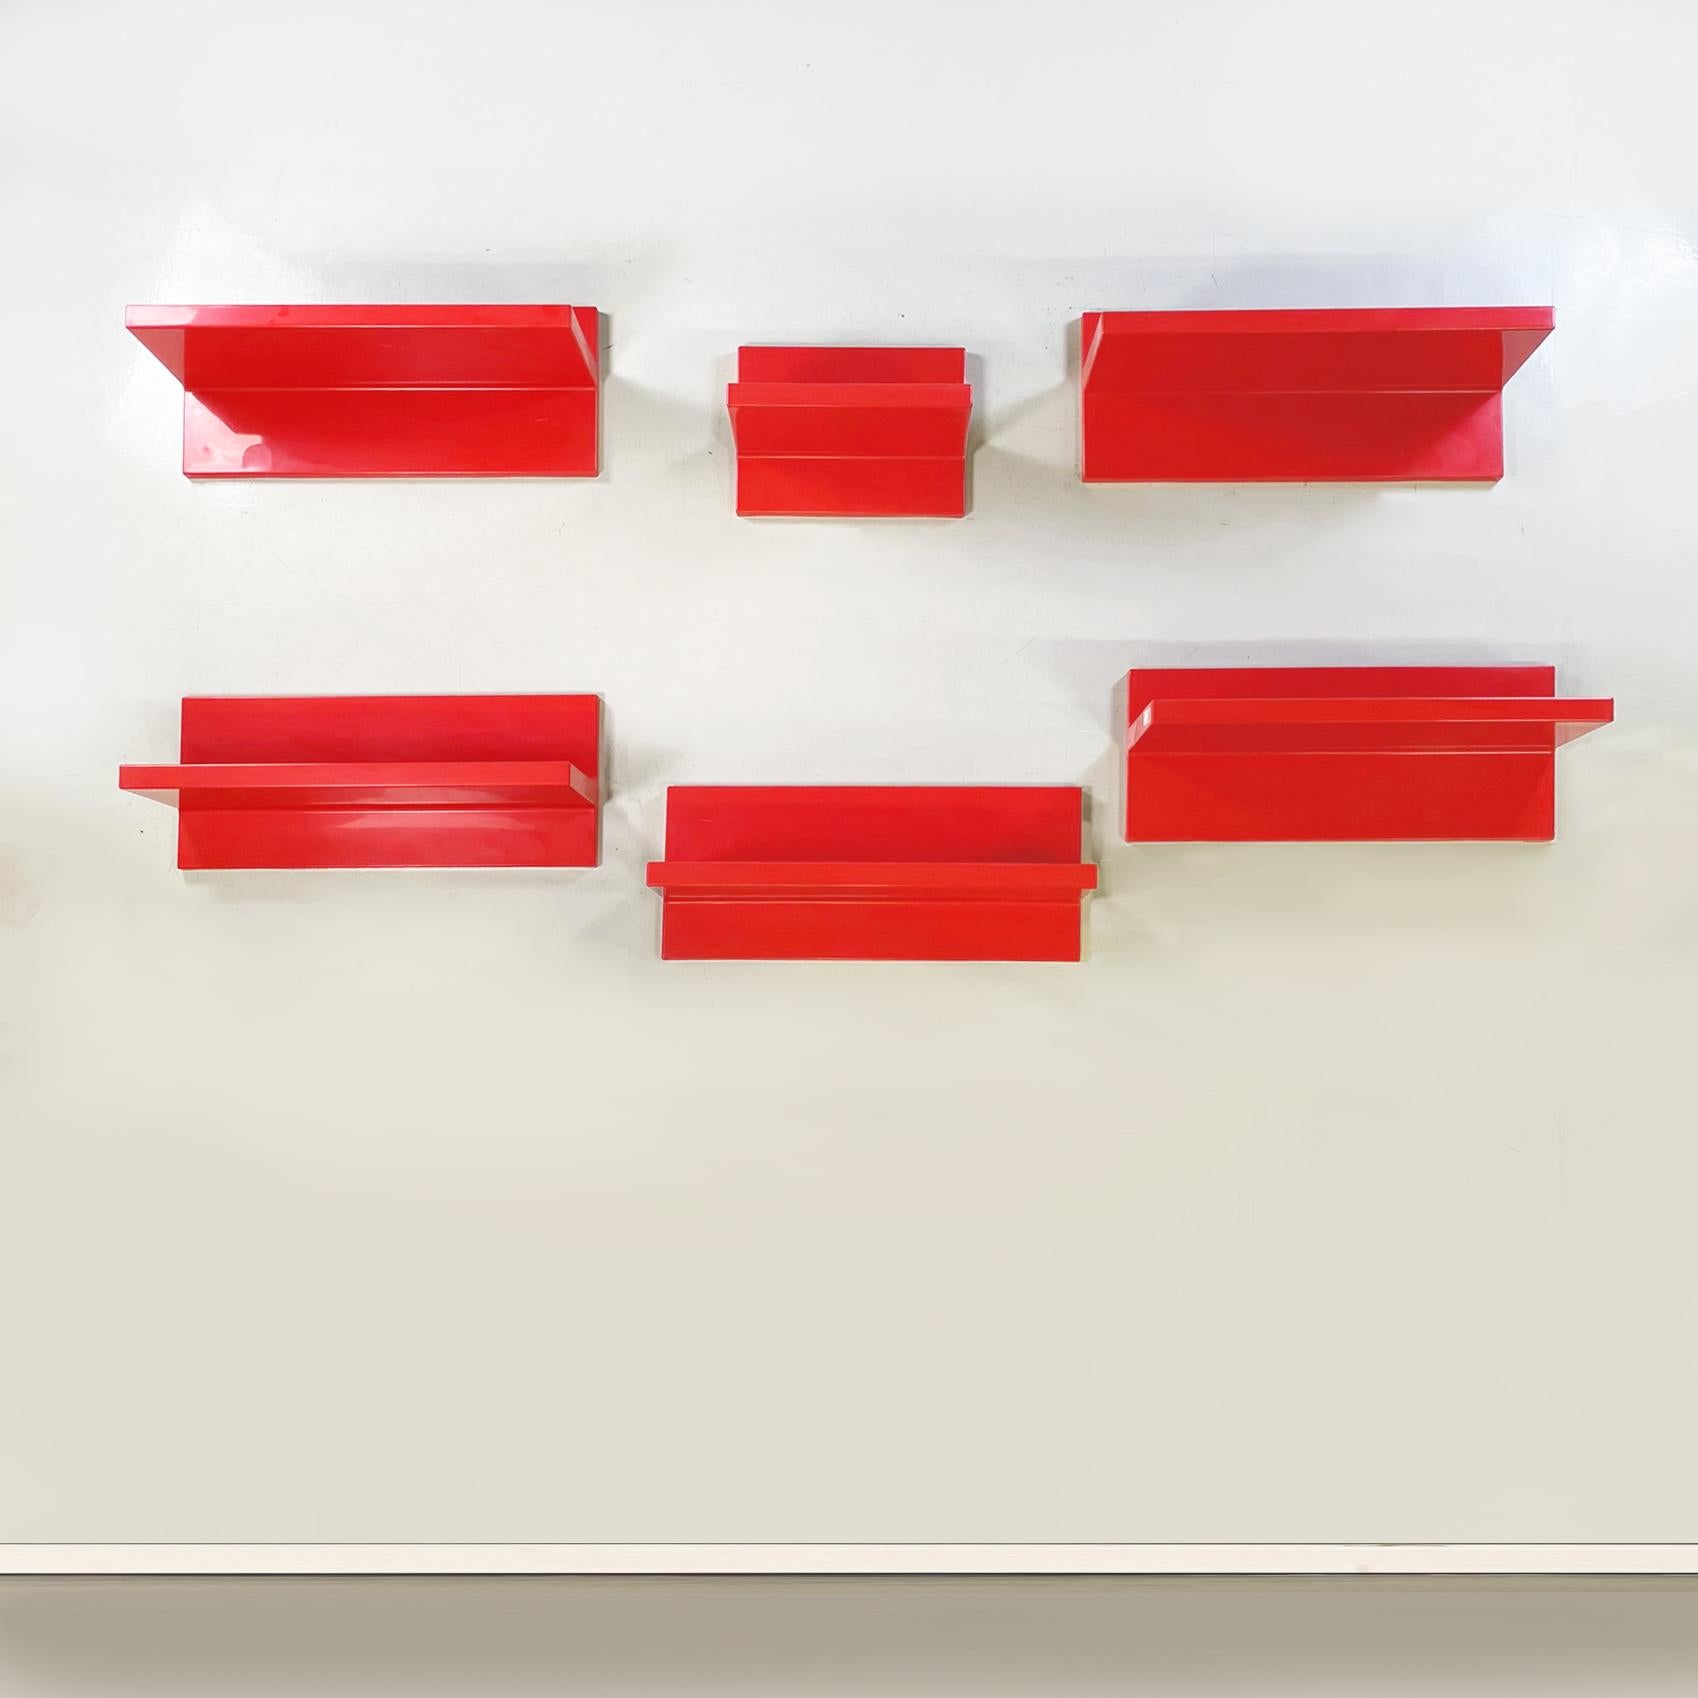 Italienische Moderne Rote Kunststoffregale von Marcello Siard für Kartell, 1970er Jahre
Set aus sechs fantastischen Regalen mit asymmetrischem Profil aus leuchtend rotem Kunststoff. Es gibt zwei Arten von Maßnahmen: eine kleine und fünf große. Sie